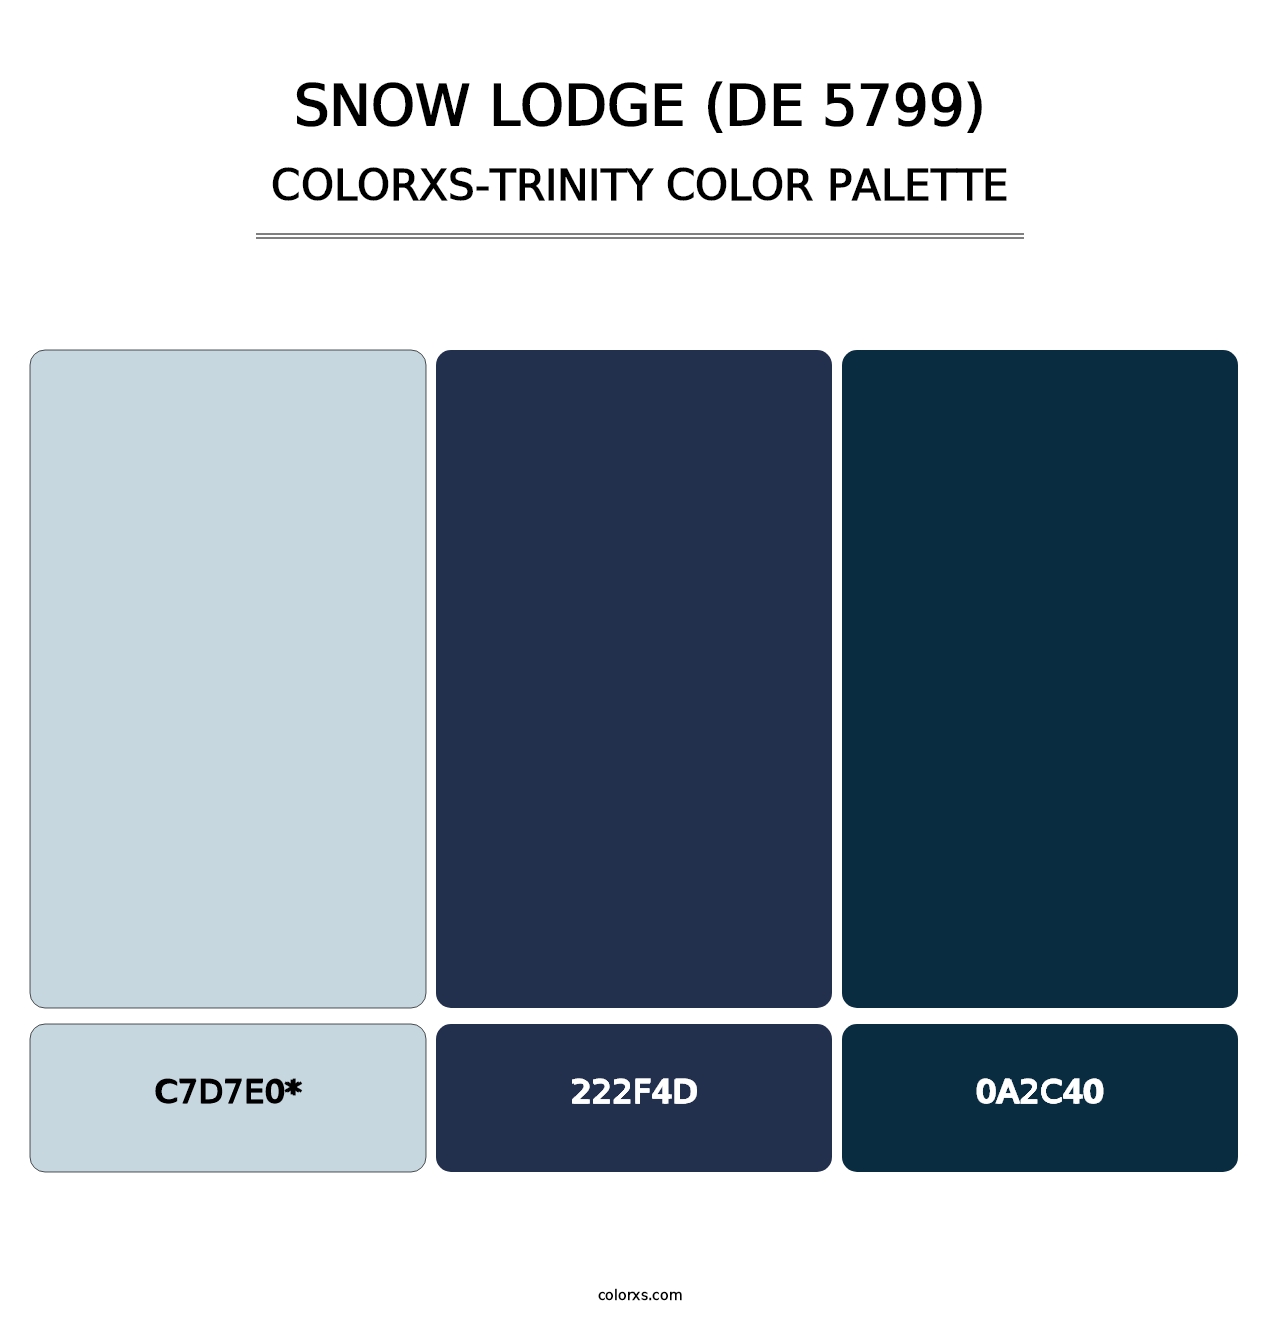 Snow Lodge (DE 5799) - Colorxs Trinity Palette